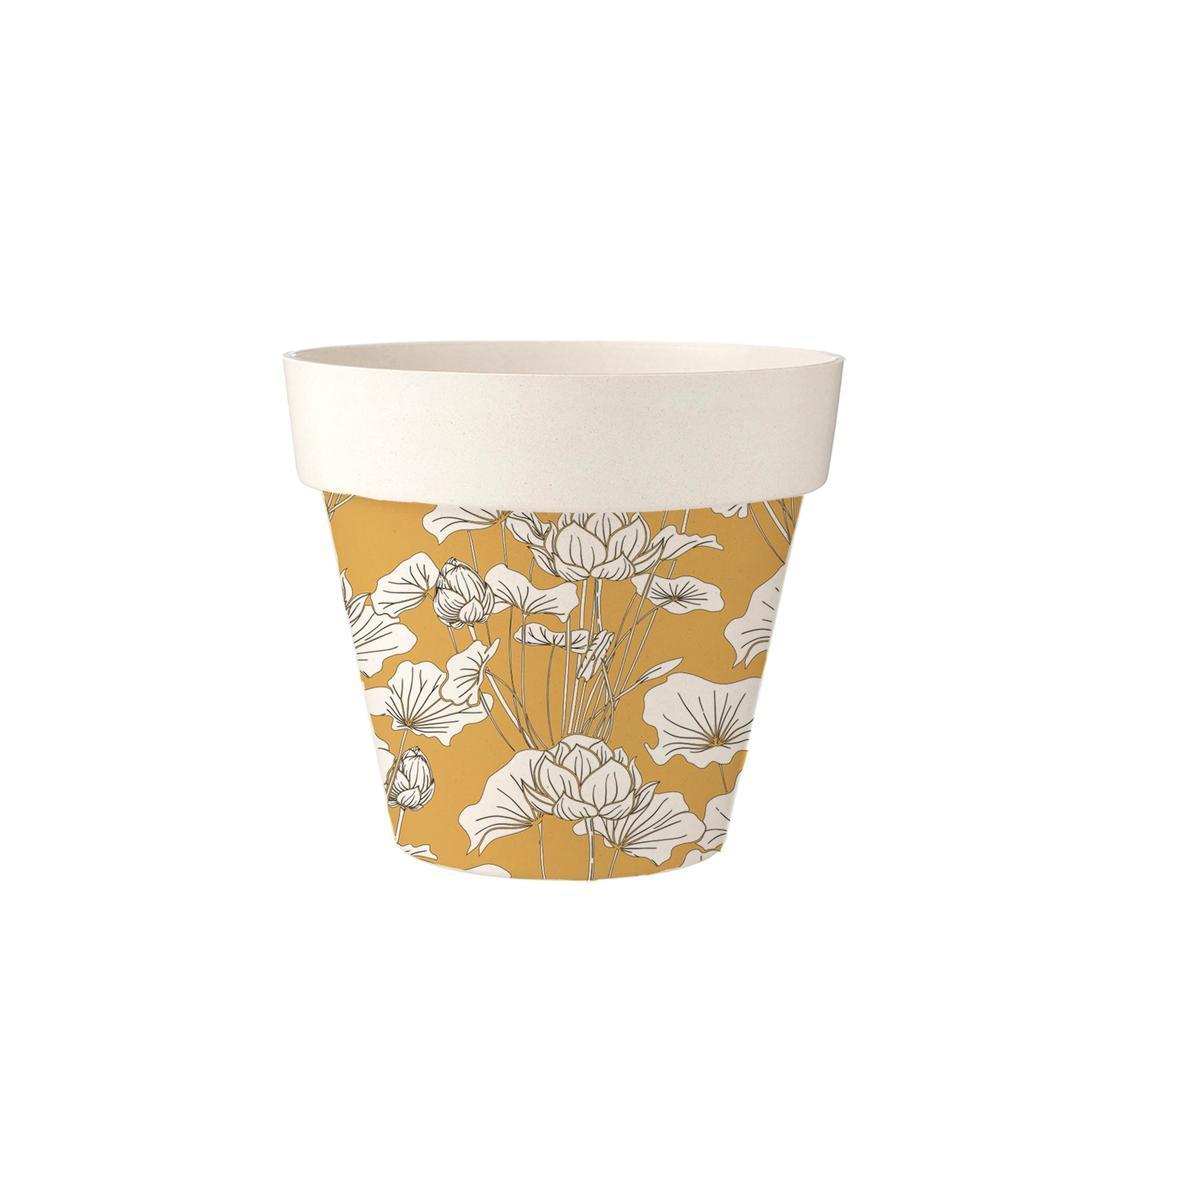 Cache - pot décoratif - ø 13.8 x H 12 cm - Différents formats - Jaune, blanc